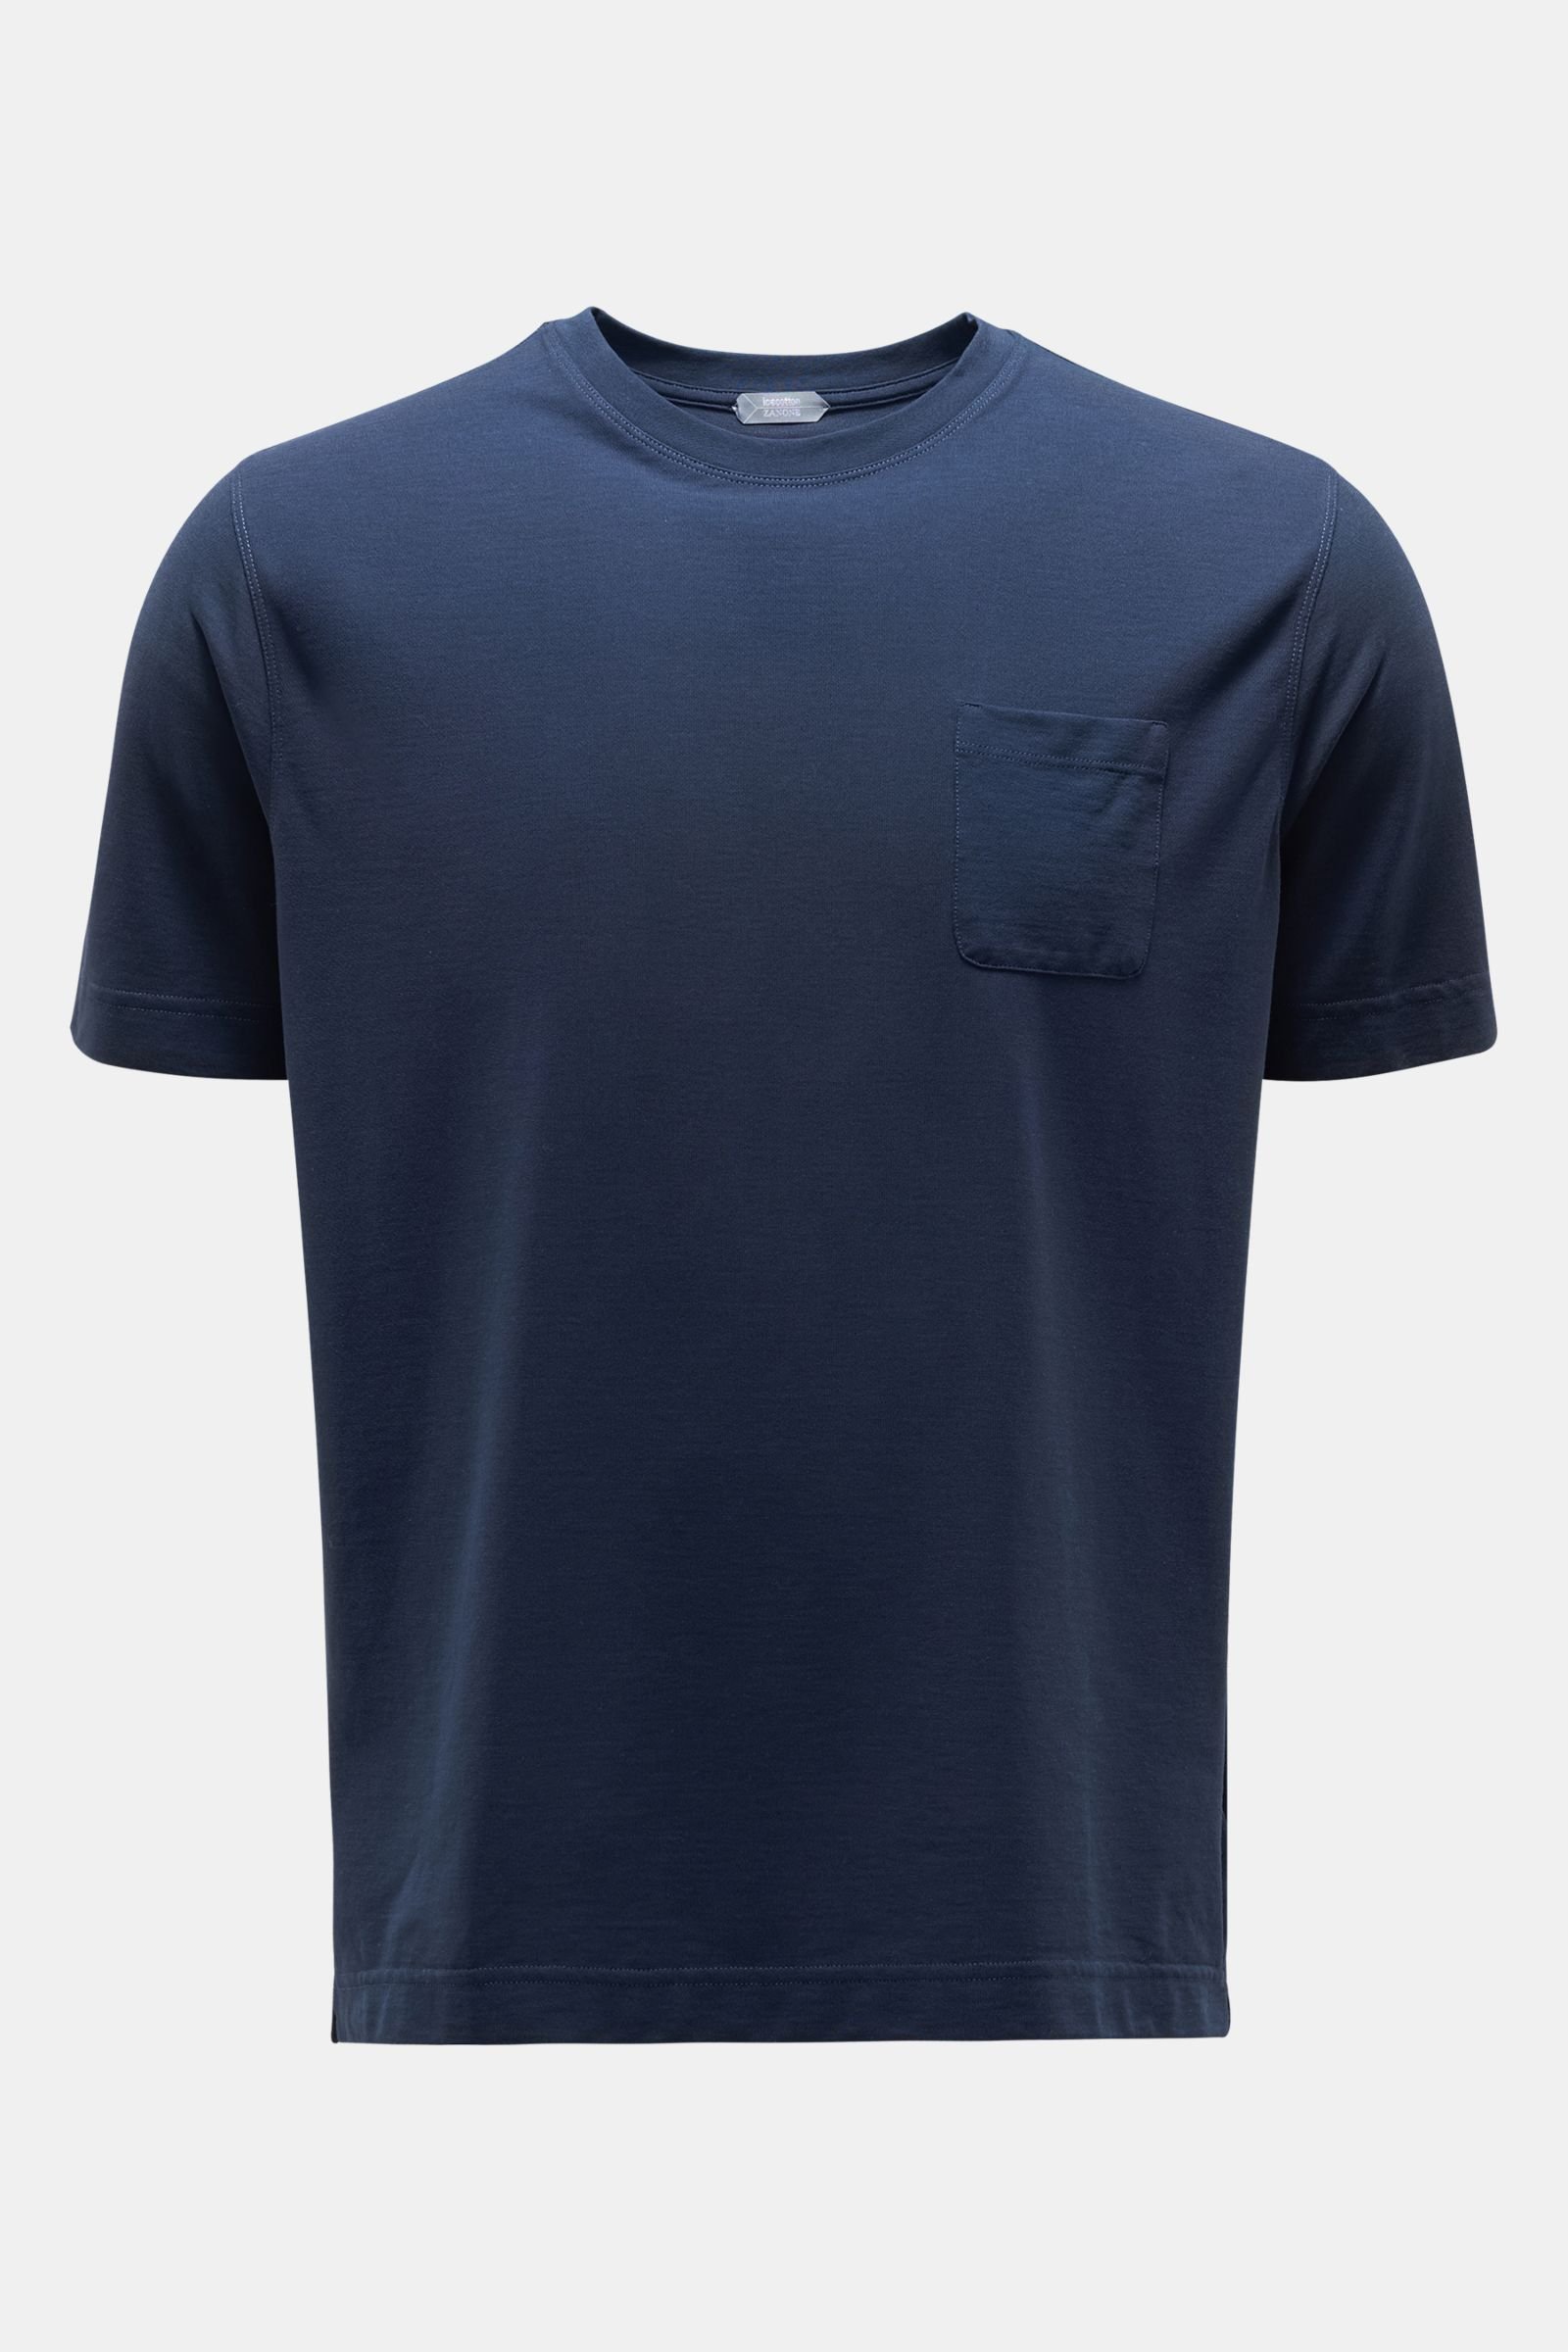 Crew neck T-shirt dark blue